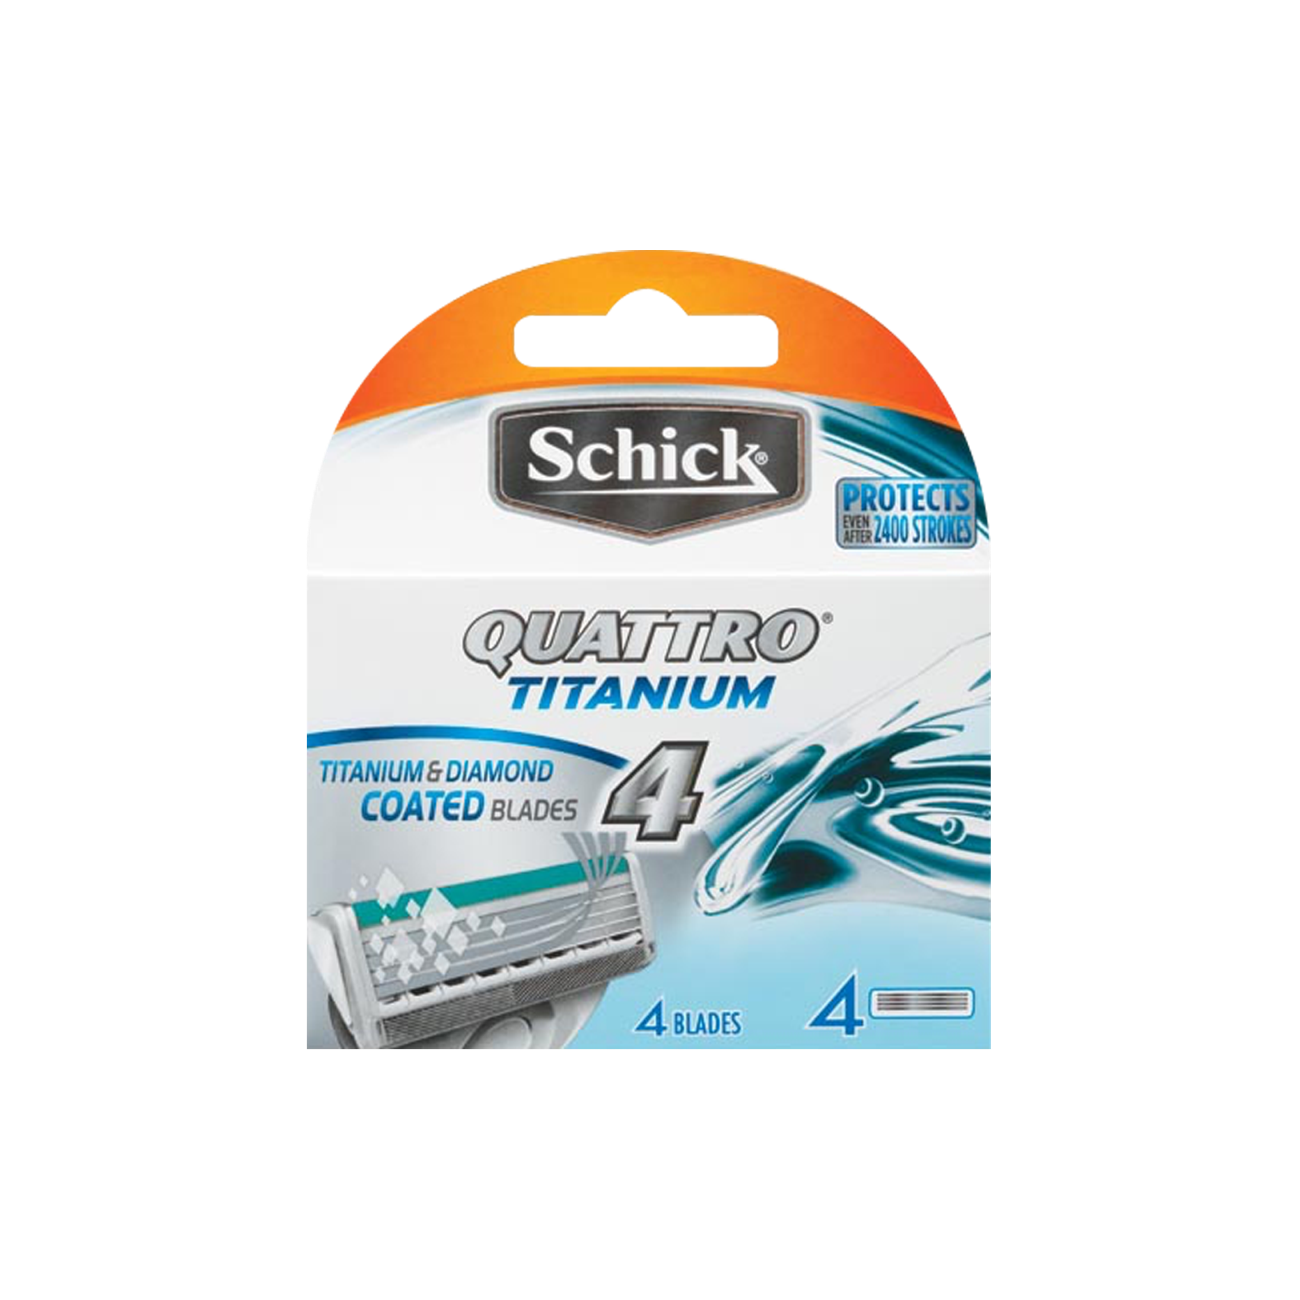 Кассеты для бритья schick quattro titanium sensitive 4 шт